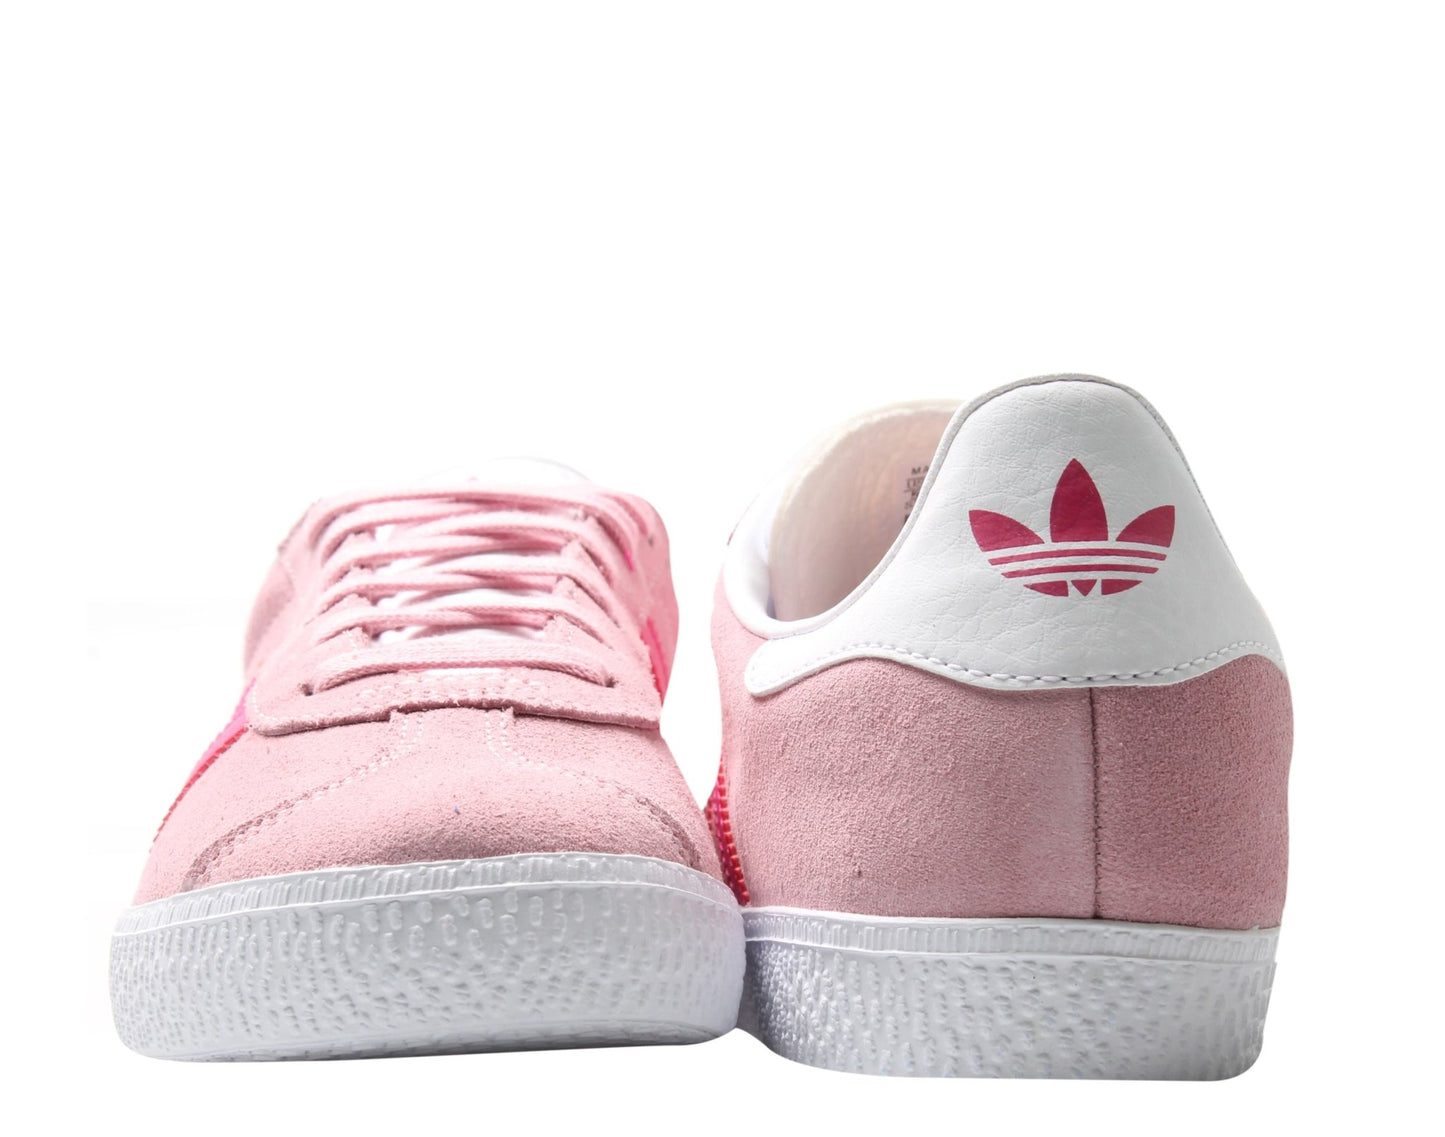 Adidas Originals Gazelle J Pink/Magenta/White Big Kids Casual Shoes B41517 - Becauze